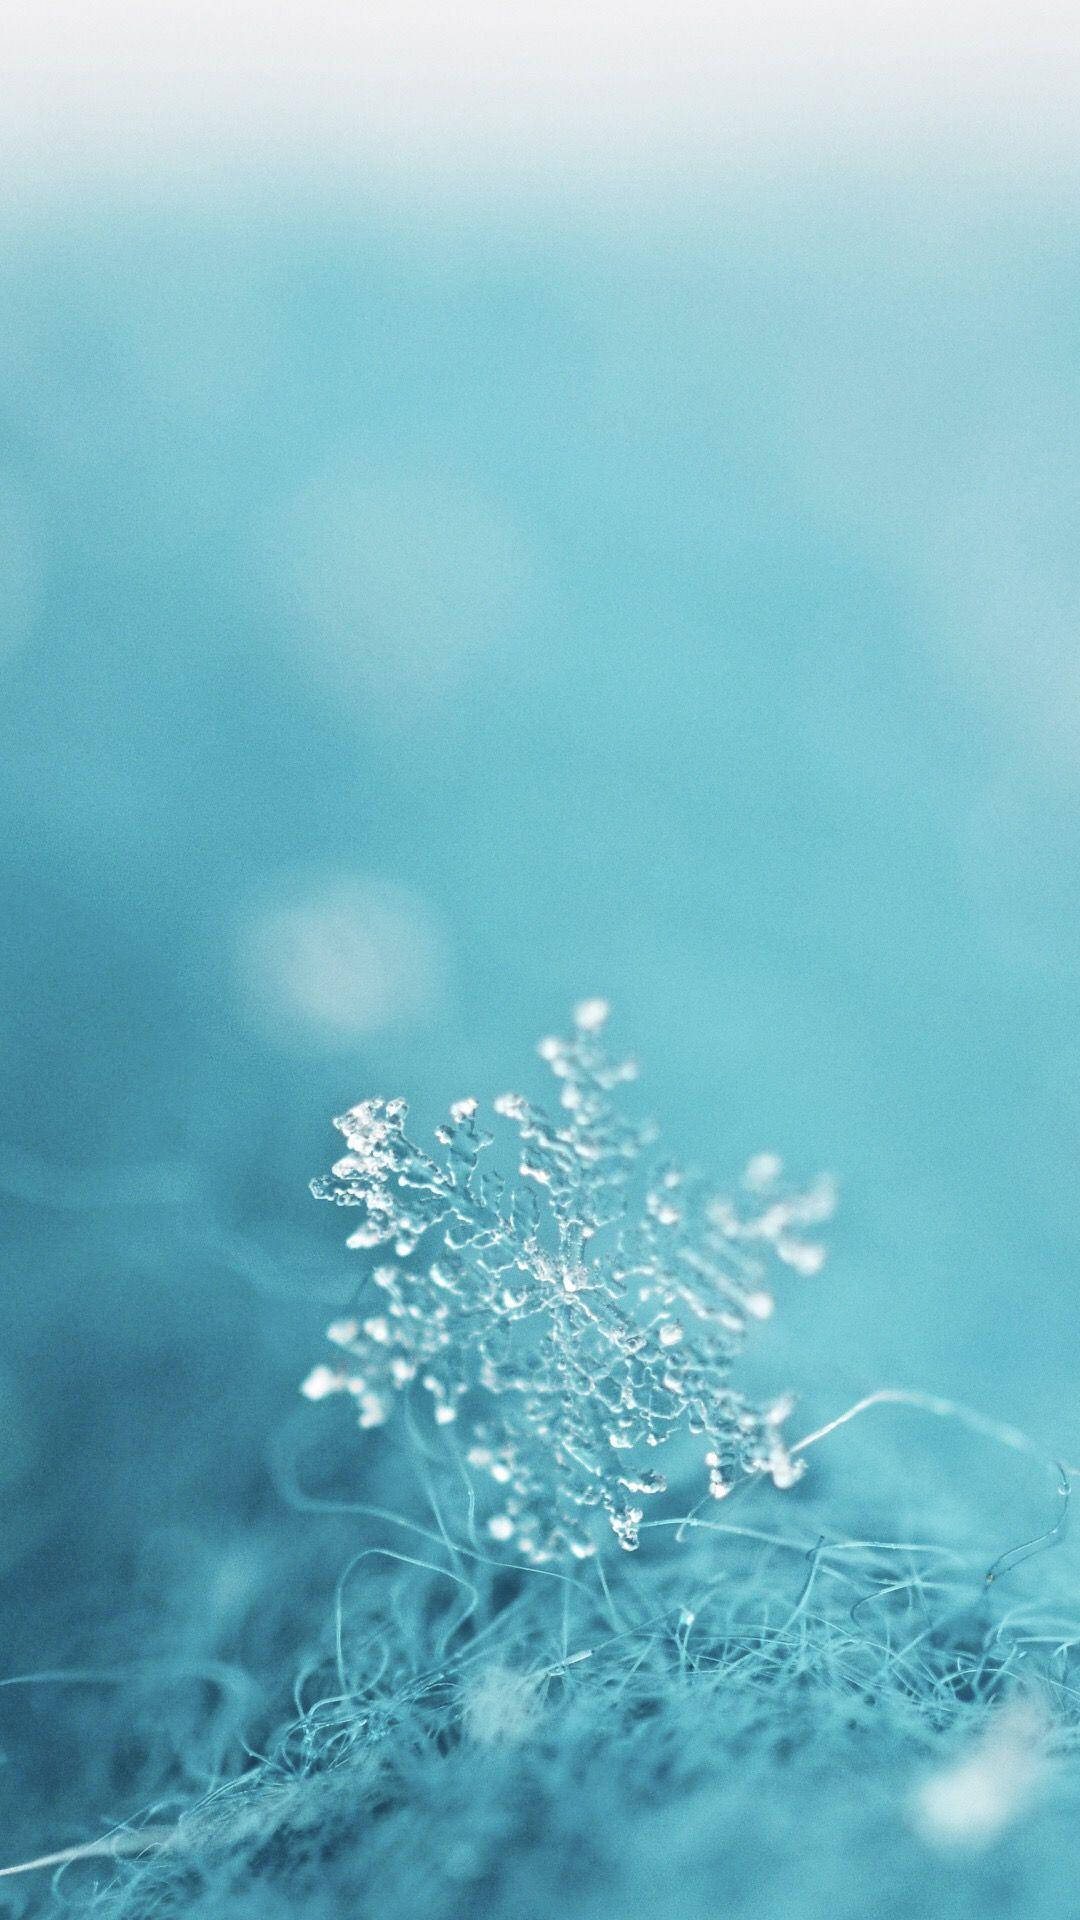 Download Macro Blur Aesthetic Teal Snowflake Wallpaper